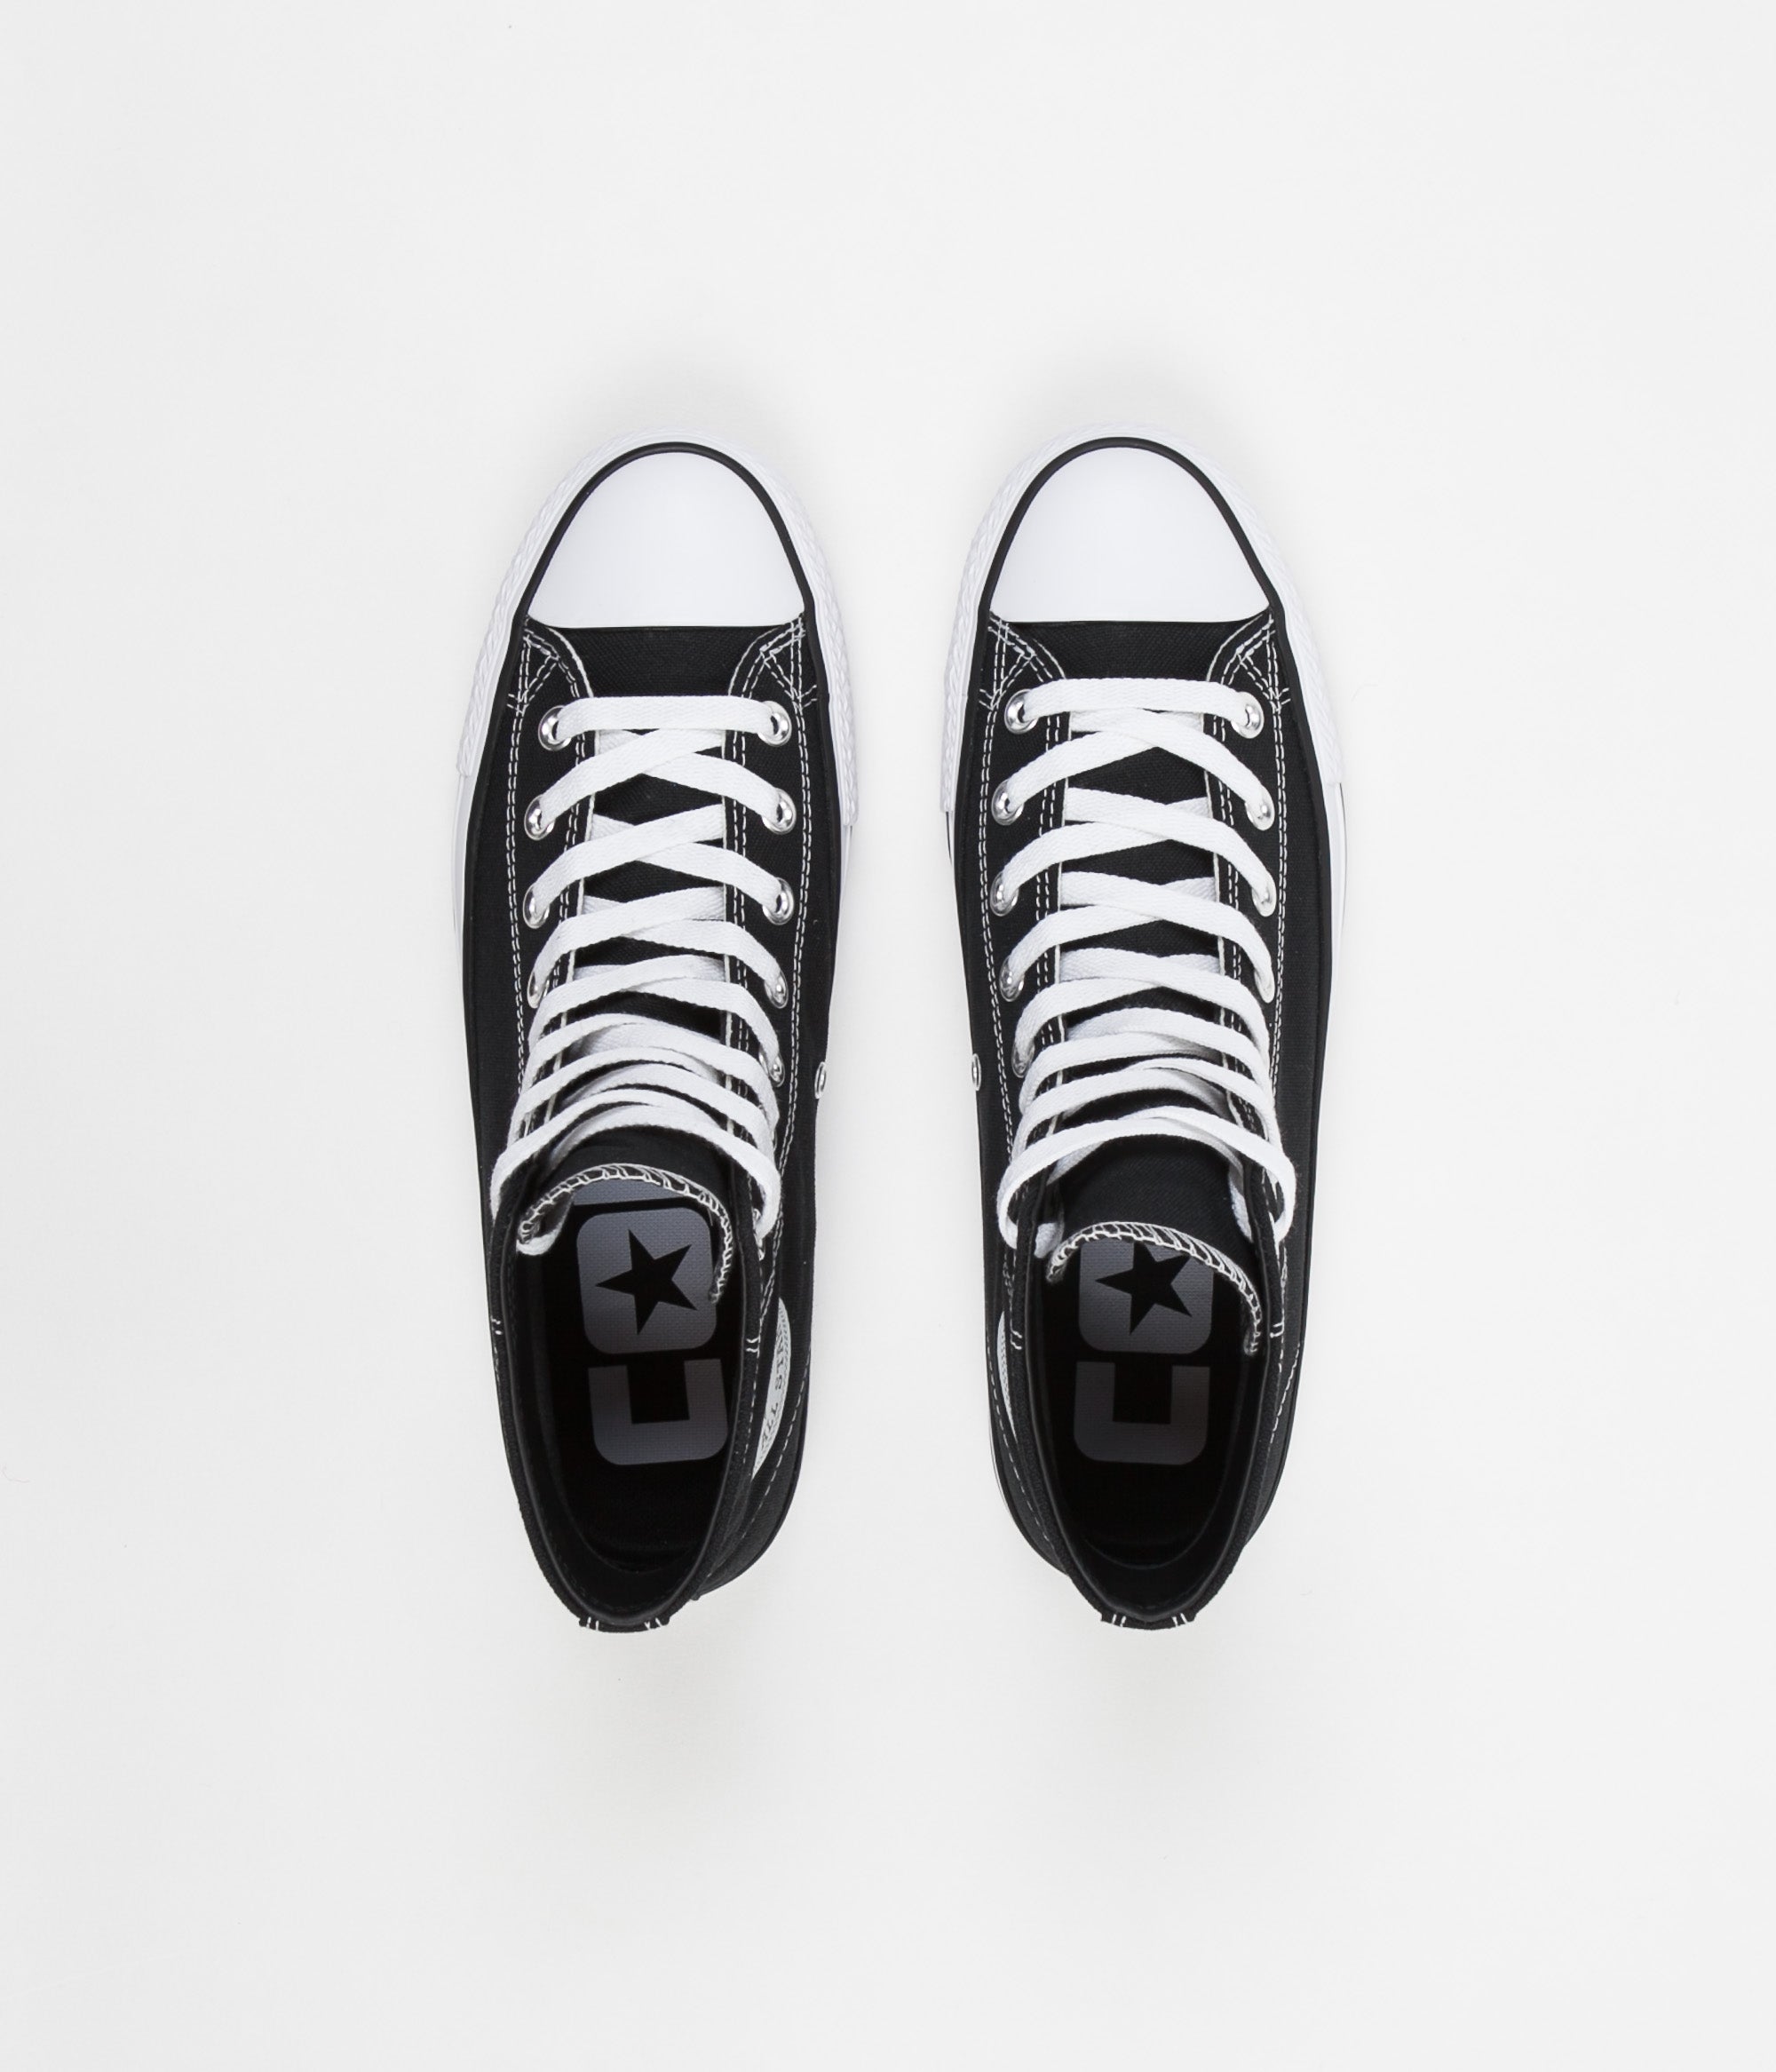 converse black canvas shoes